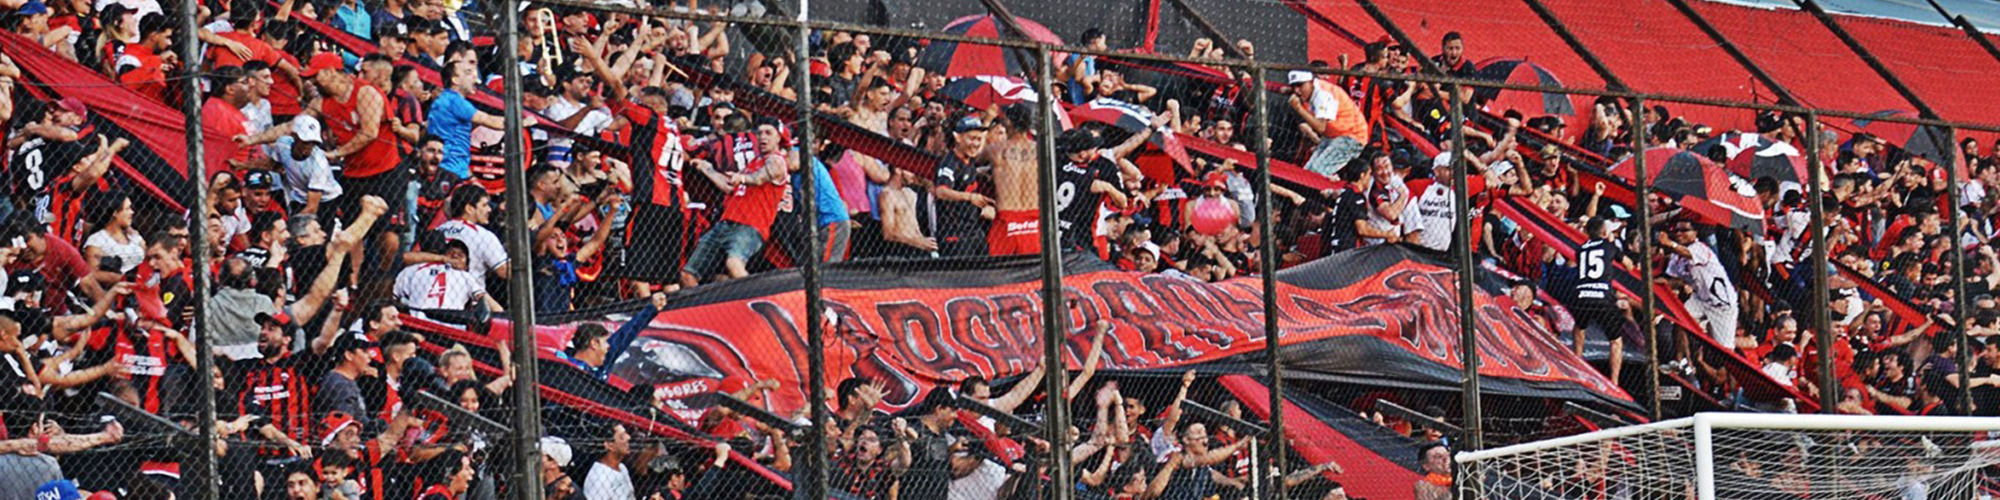 Defensores Belgrano Tickets & Experiences